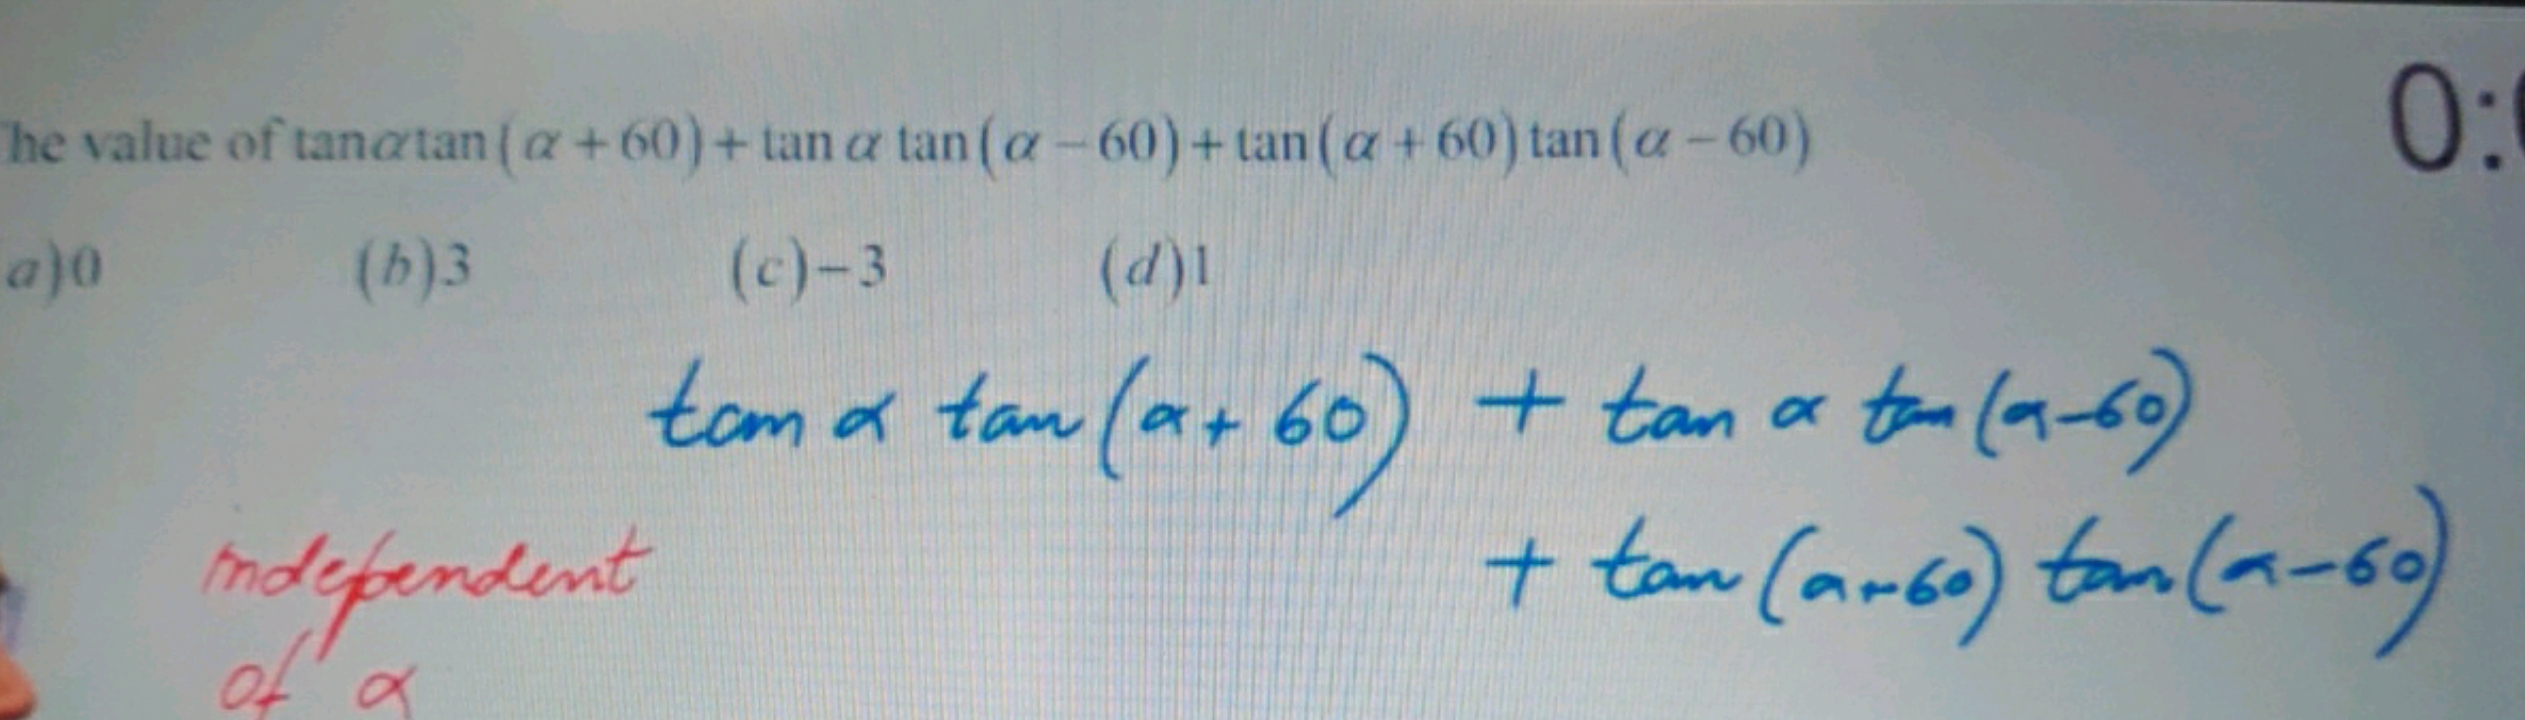 he value of tanαtan(α+60)+tanαtan(α−60)+tan(α+60)tan(α−60)
0 :
(b) 3
(